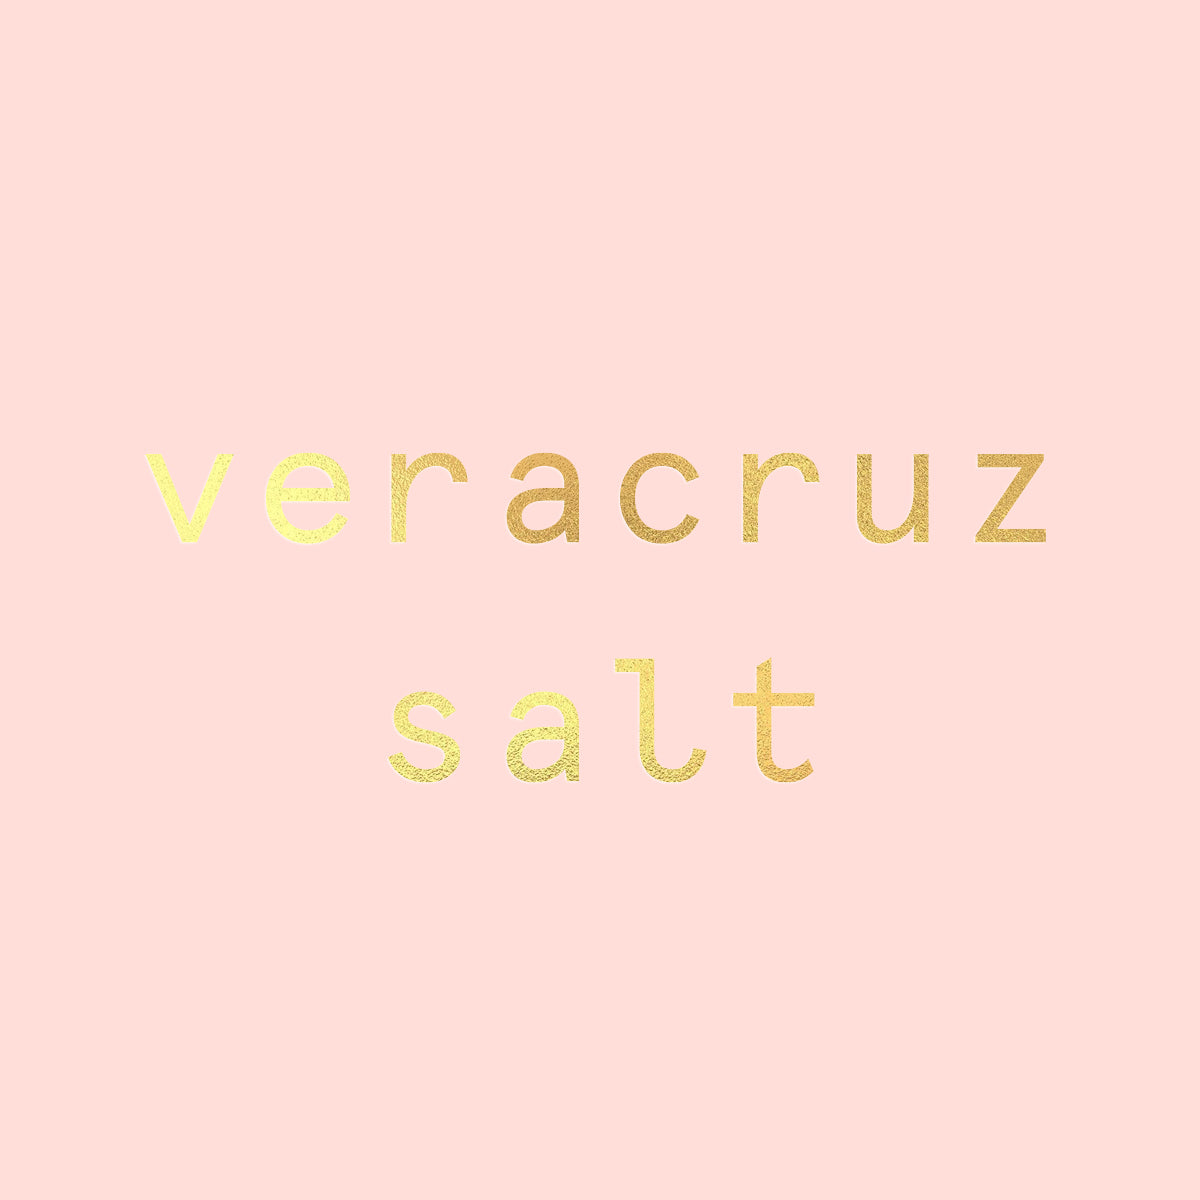 Veracruz Salt